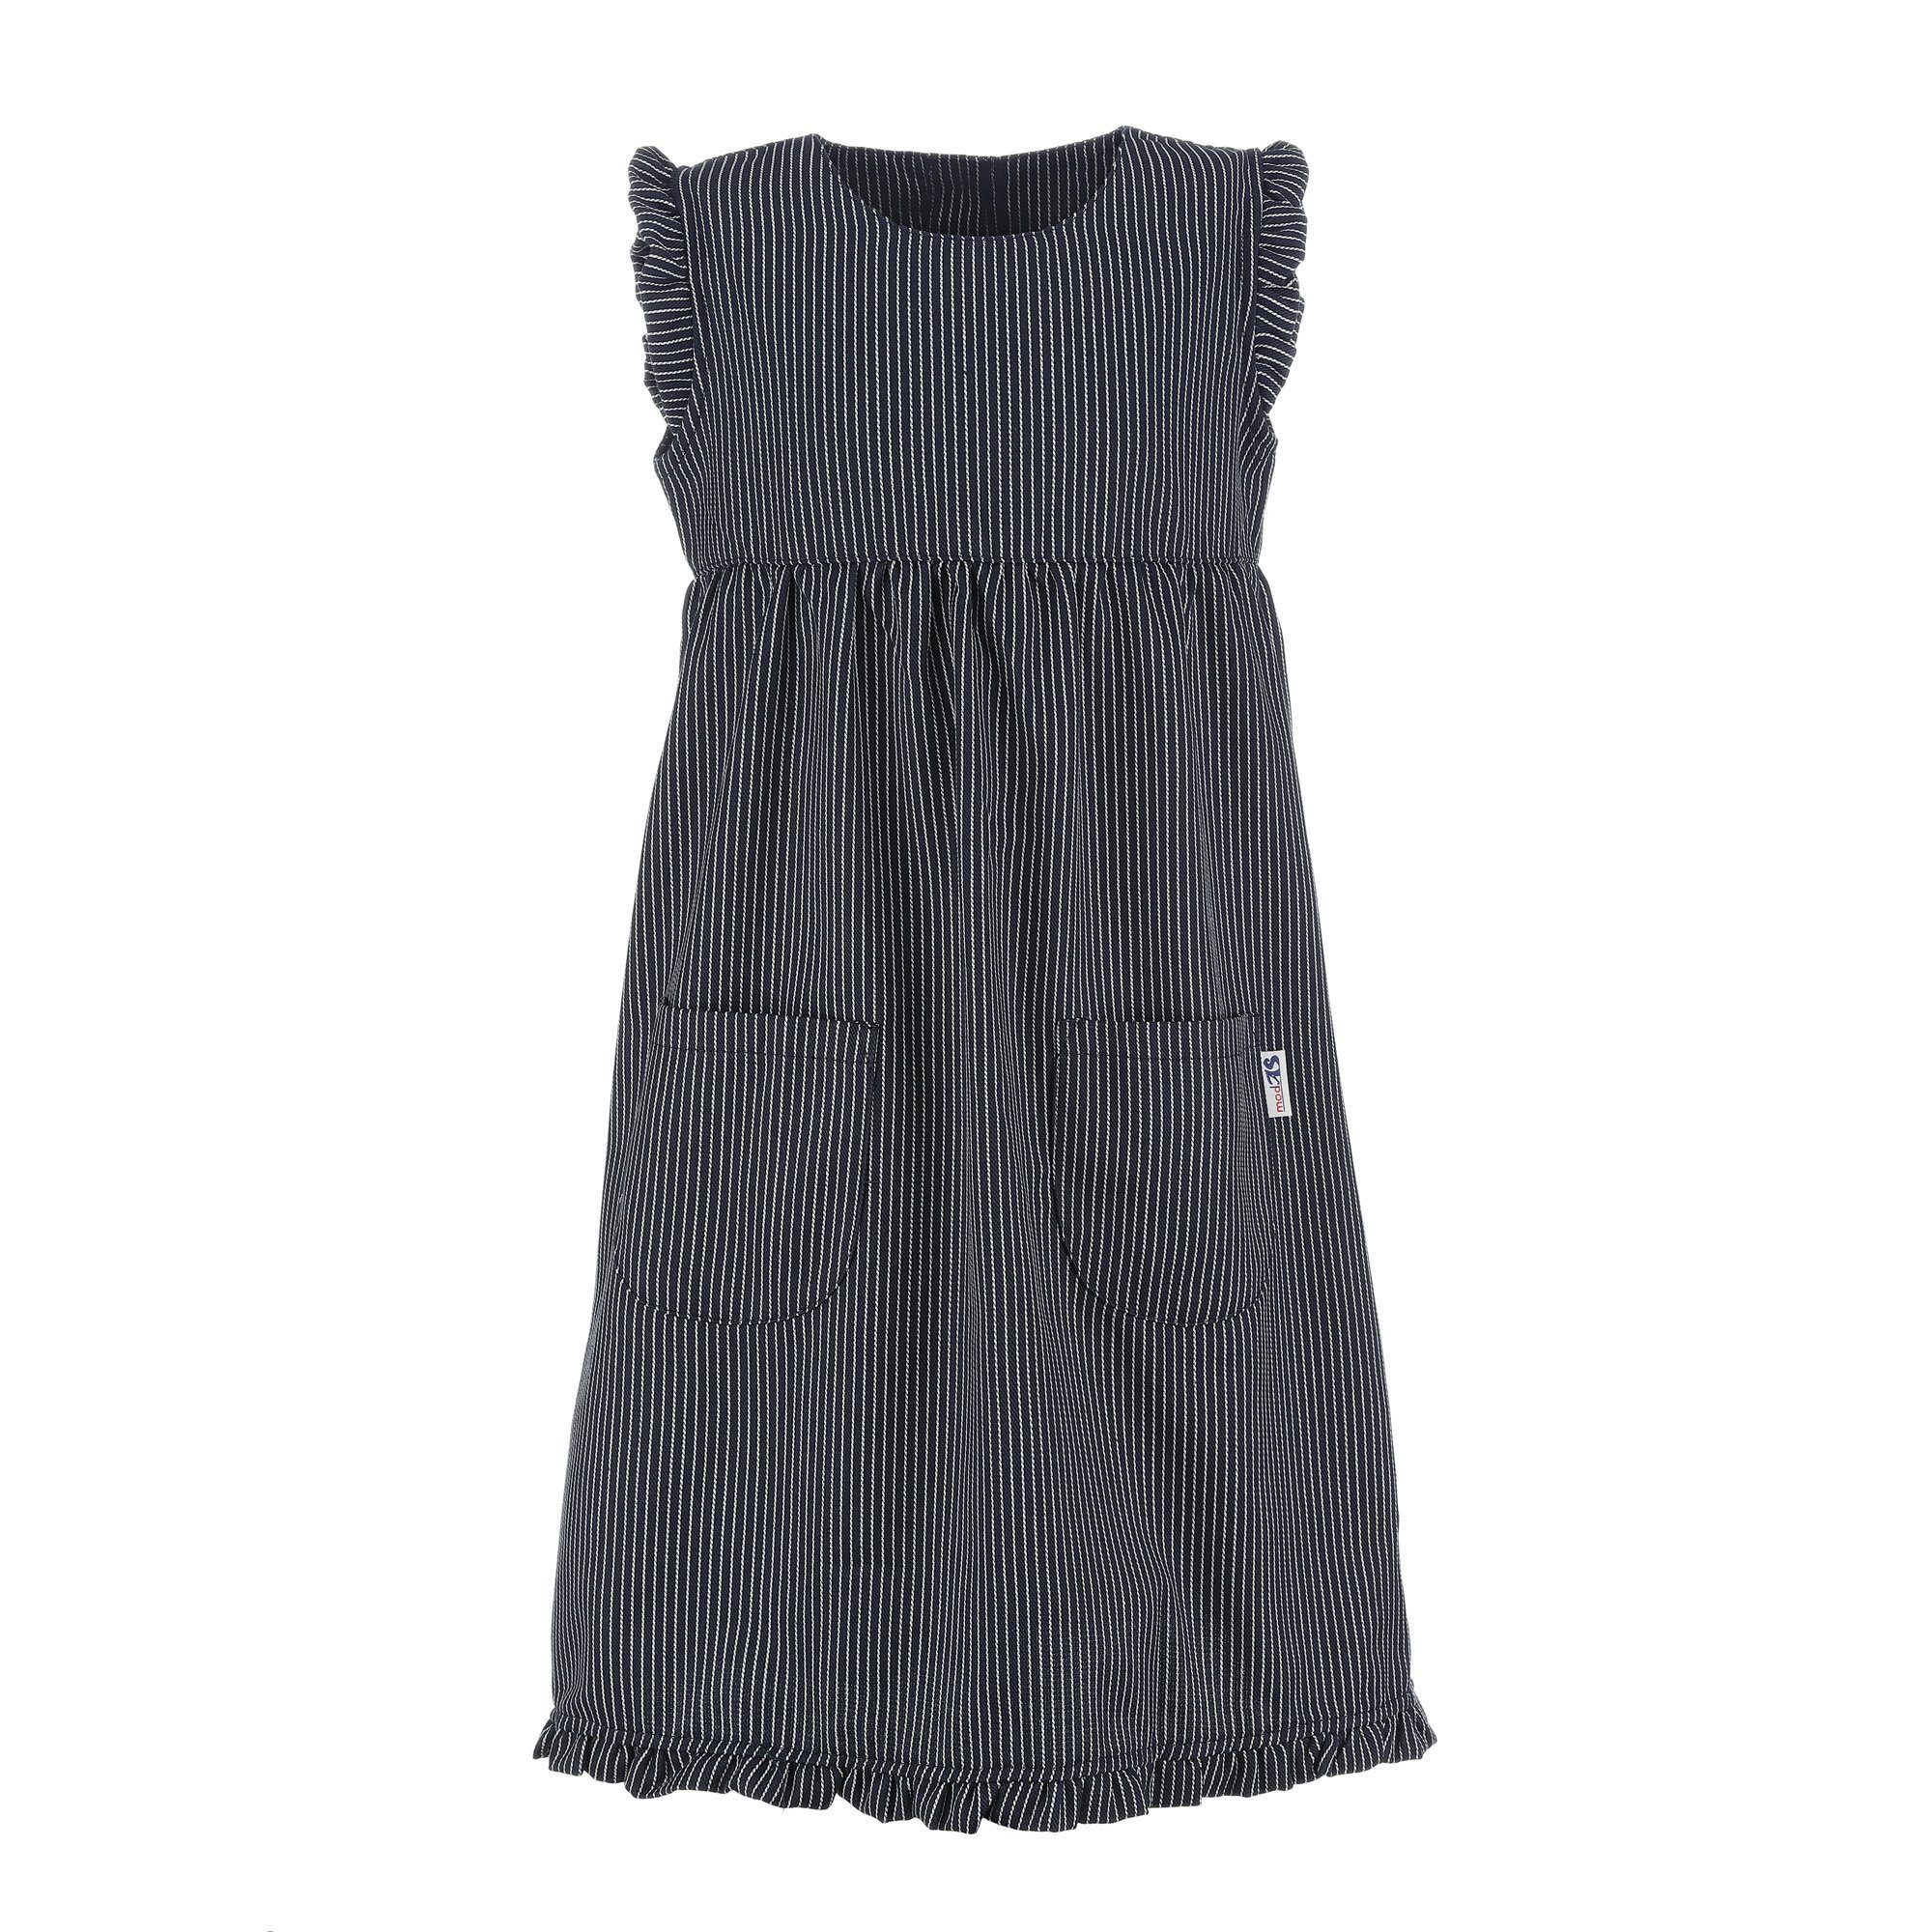 modAS Strandkleid Streifenkleid Mädchen - Streifen Blau breiter Kinder für Fischerkleid (10) Maritim Streifen